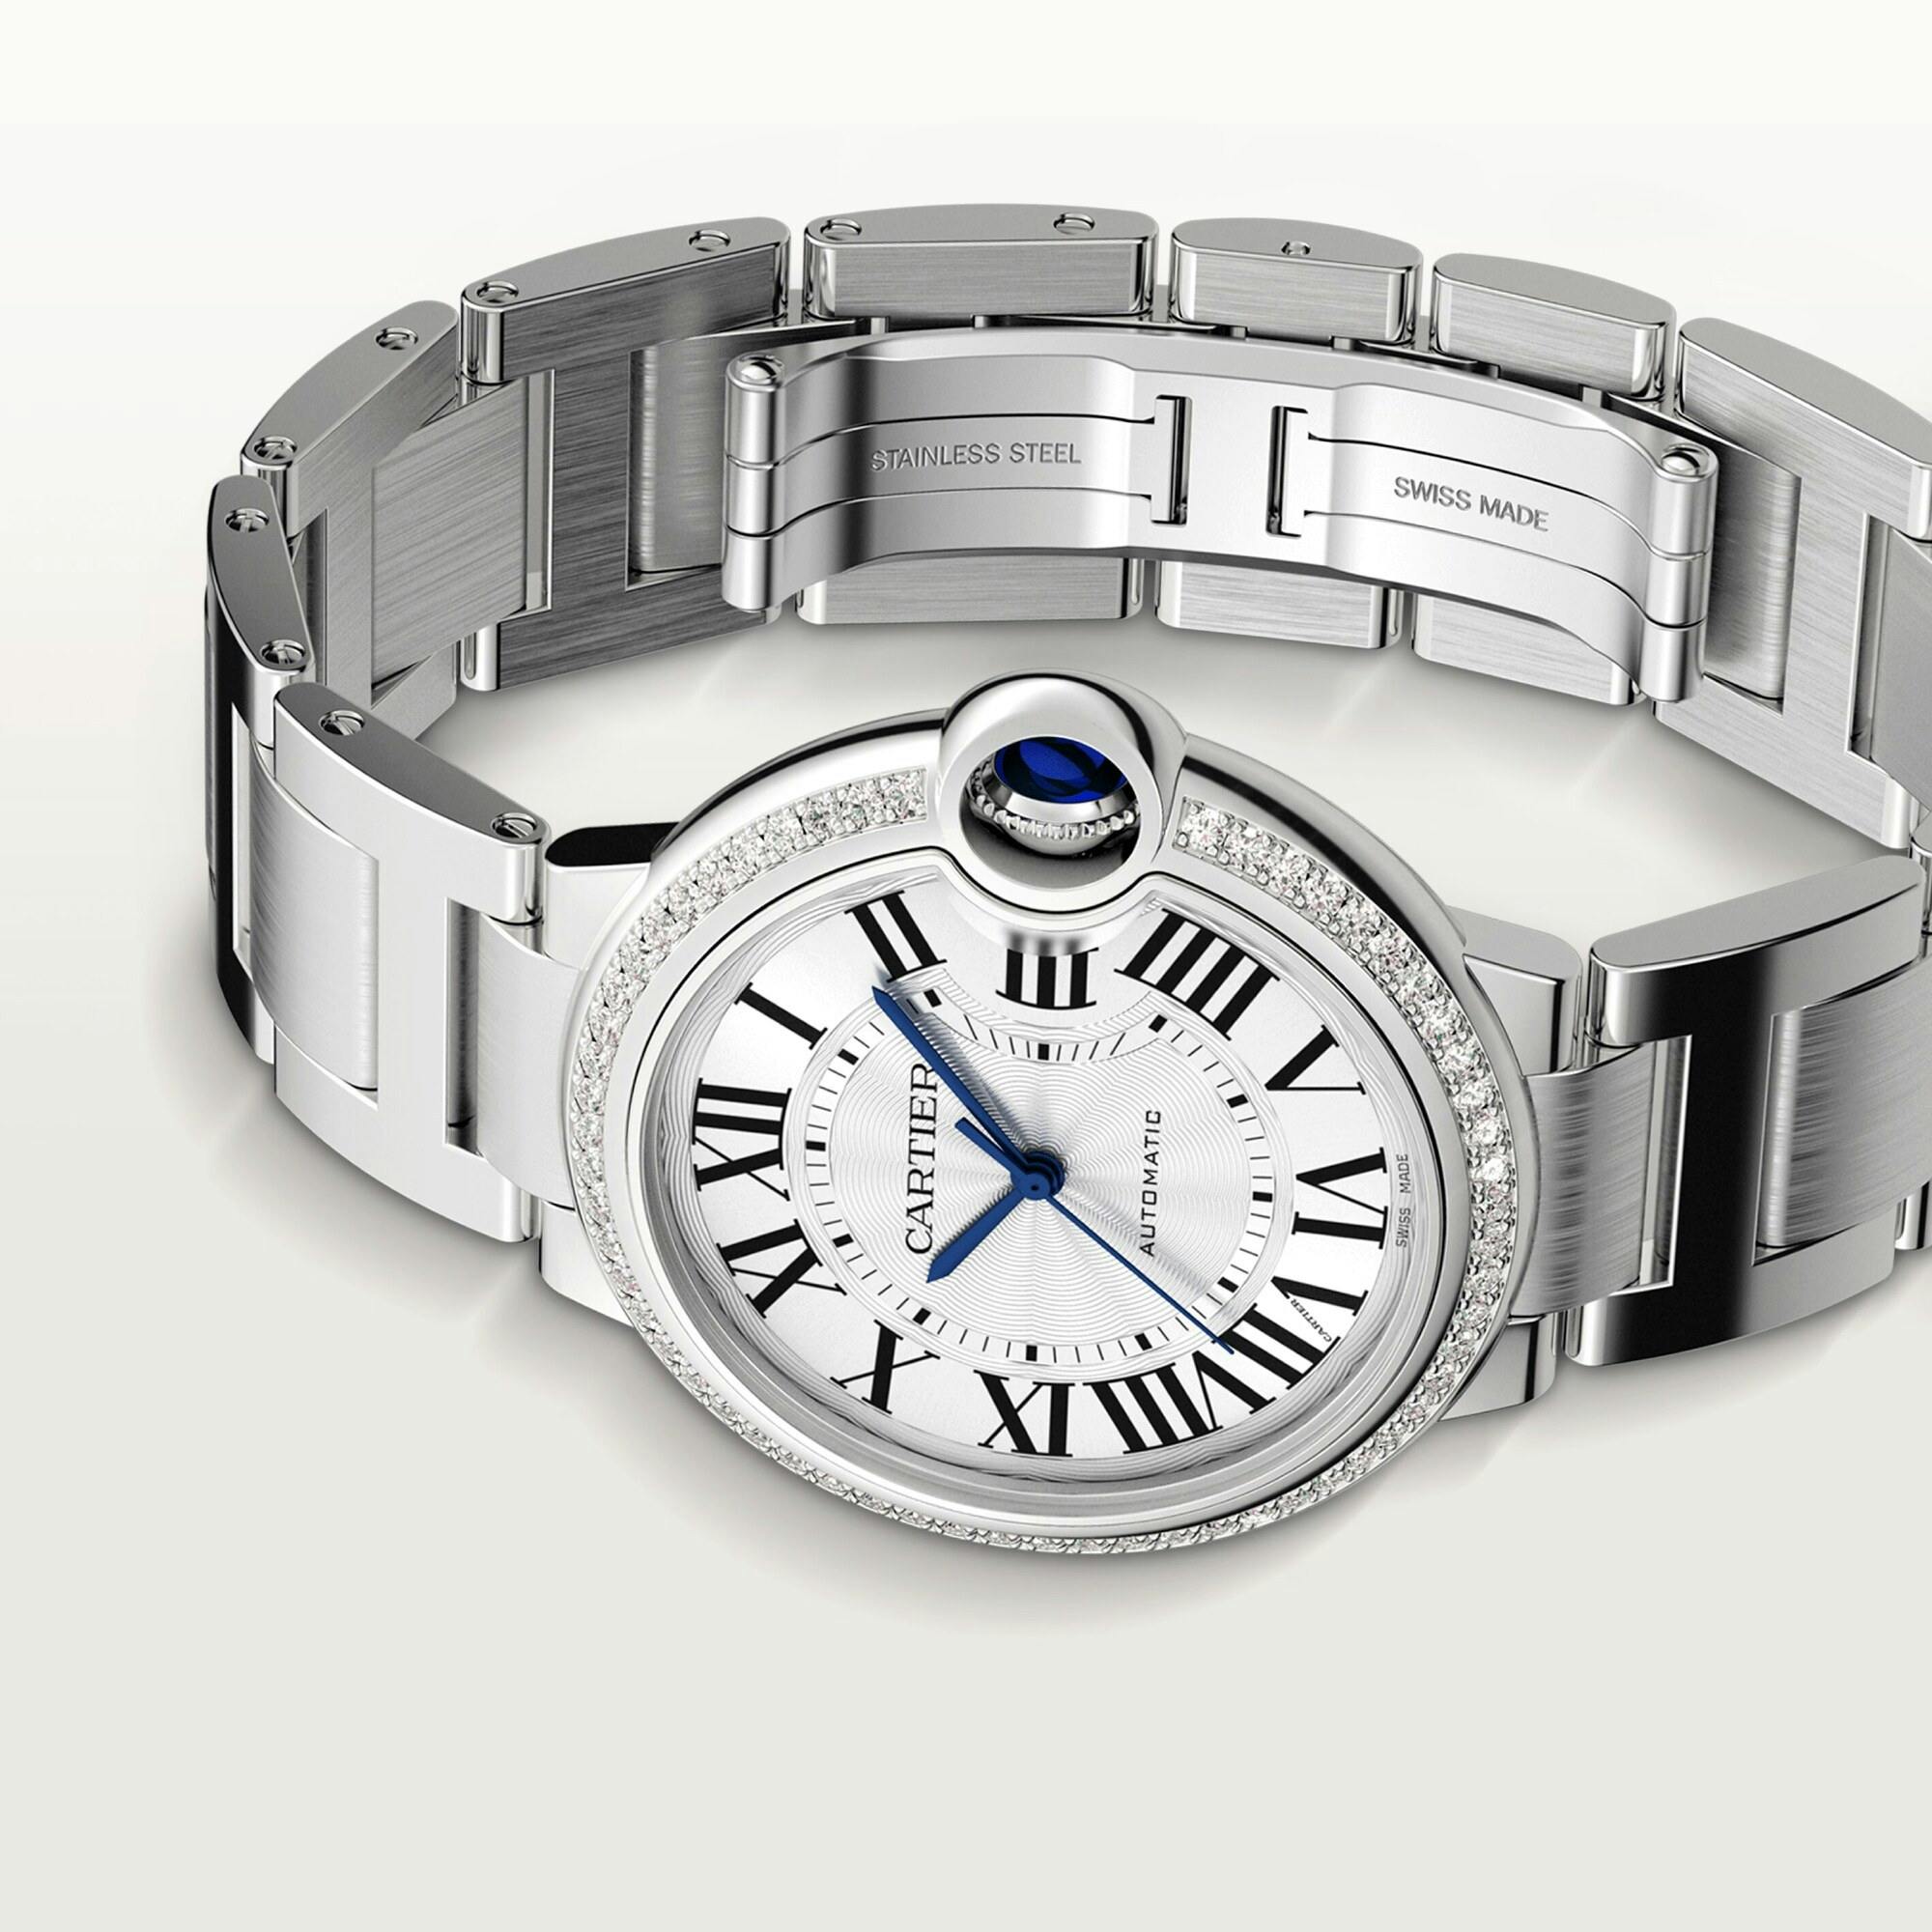 Ballon Bleu de Cartier Watch with Diamonds, 36mm 2